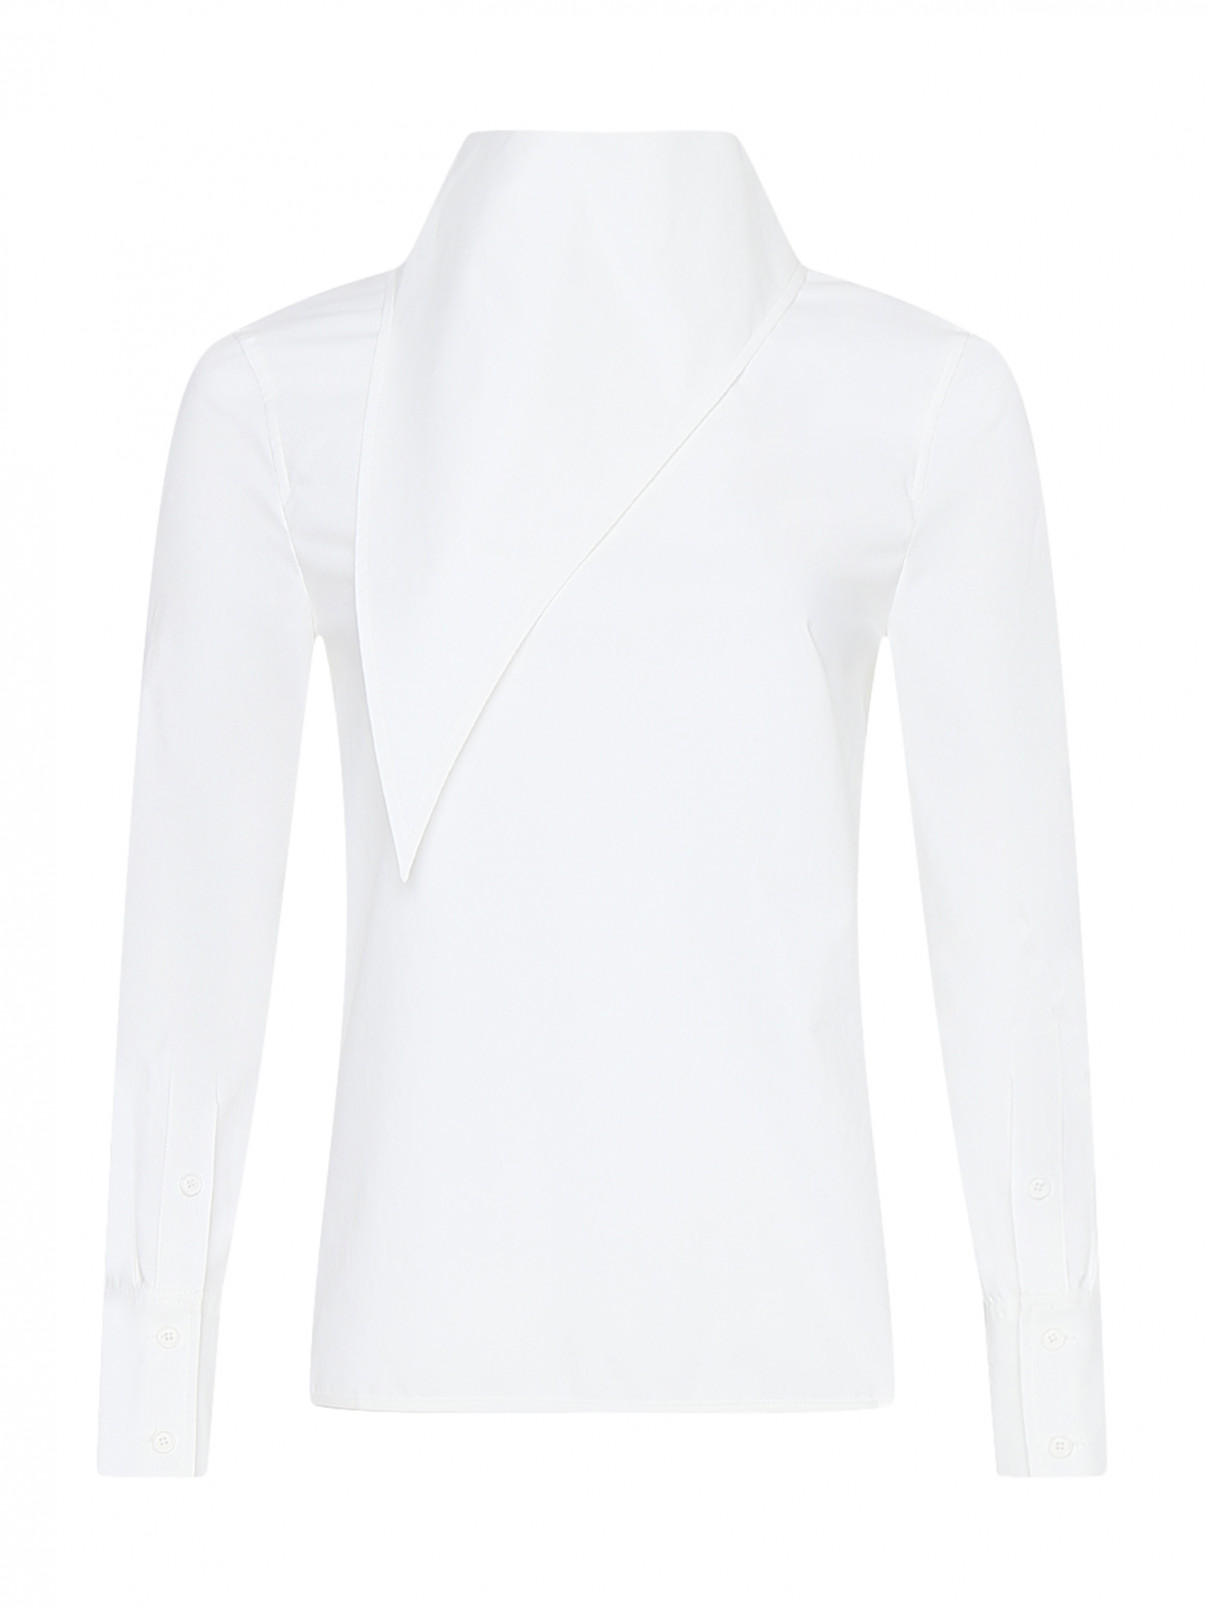 Рубашка из хлопка с декоративным воротом Proenza Schouler  –  Общий вид  – Цвет:  Белый